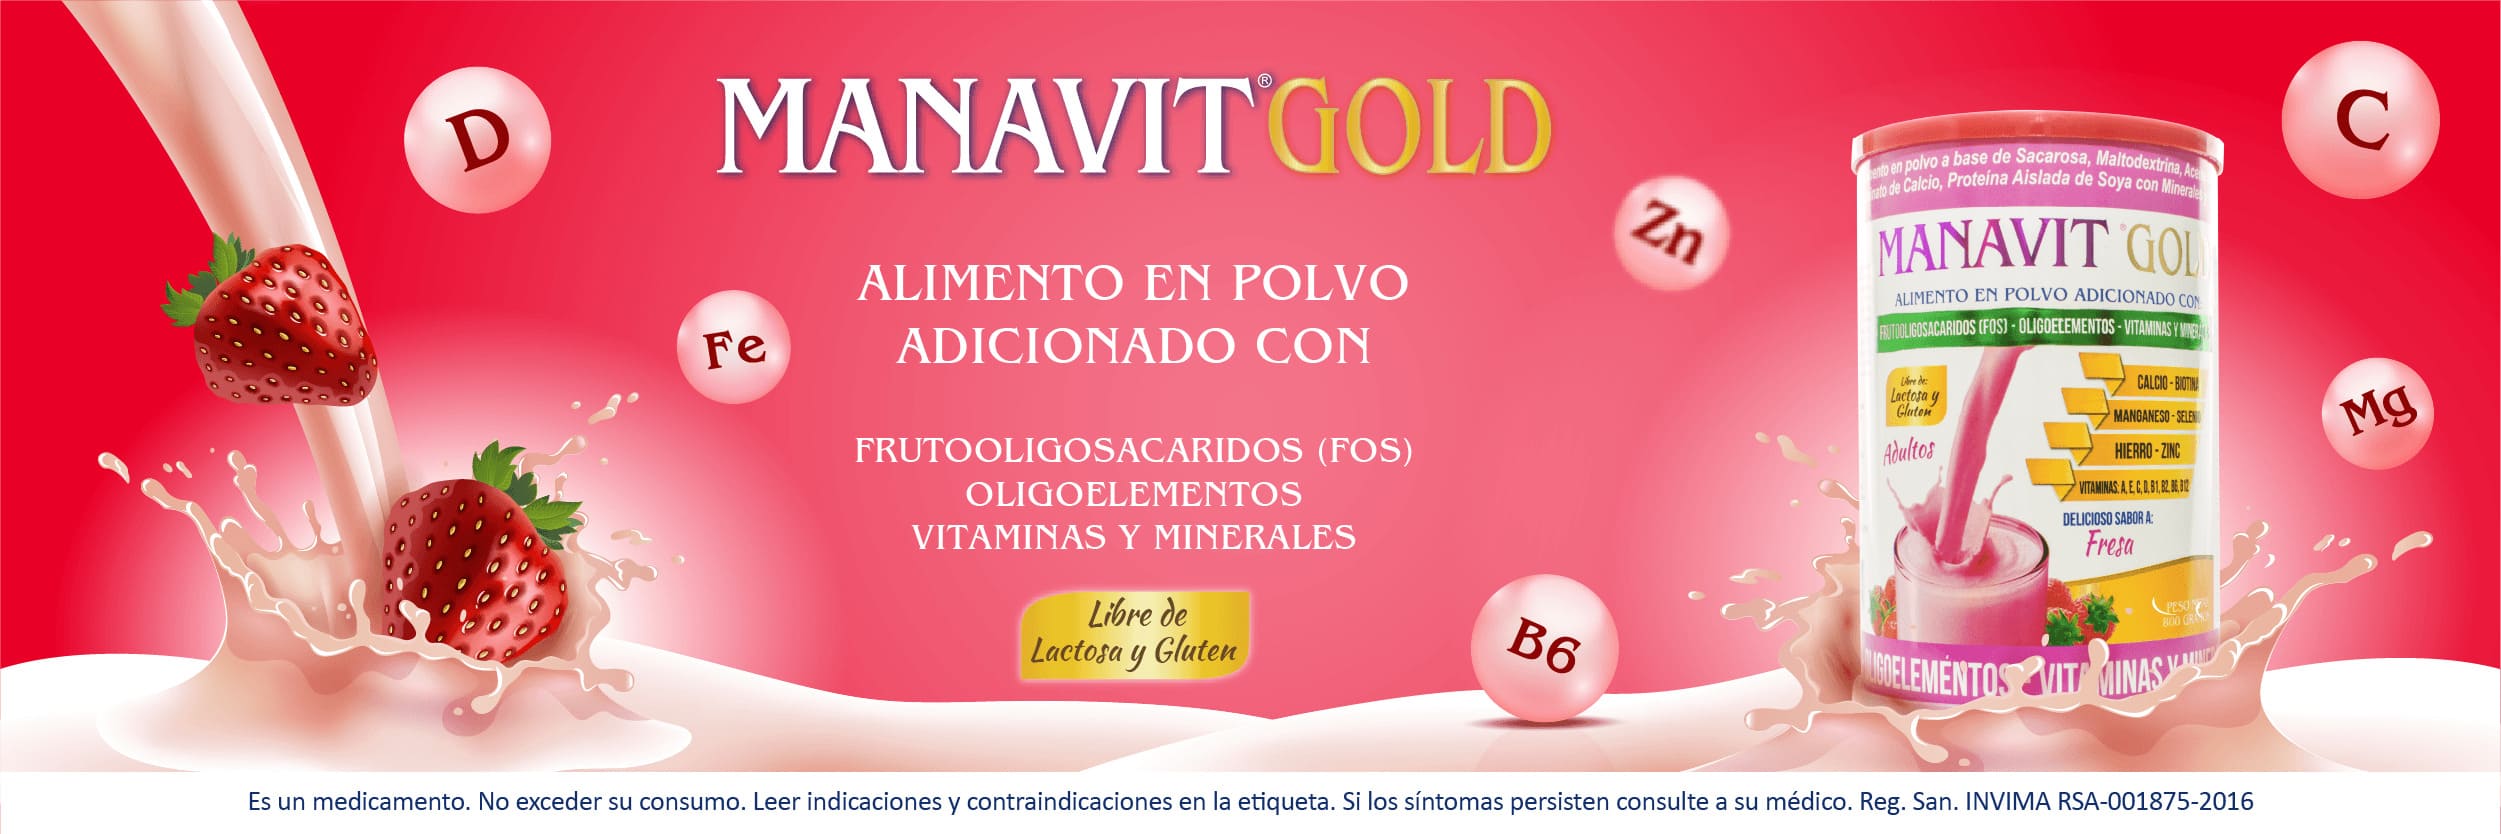 Bioquifar Banner Manavit Gold